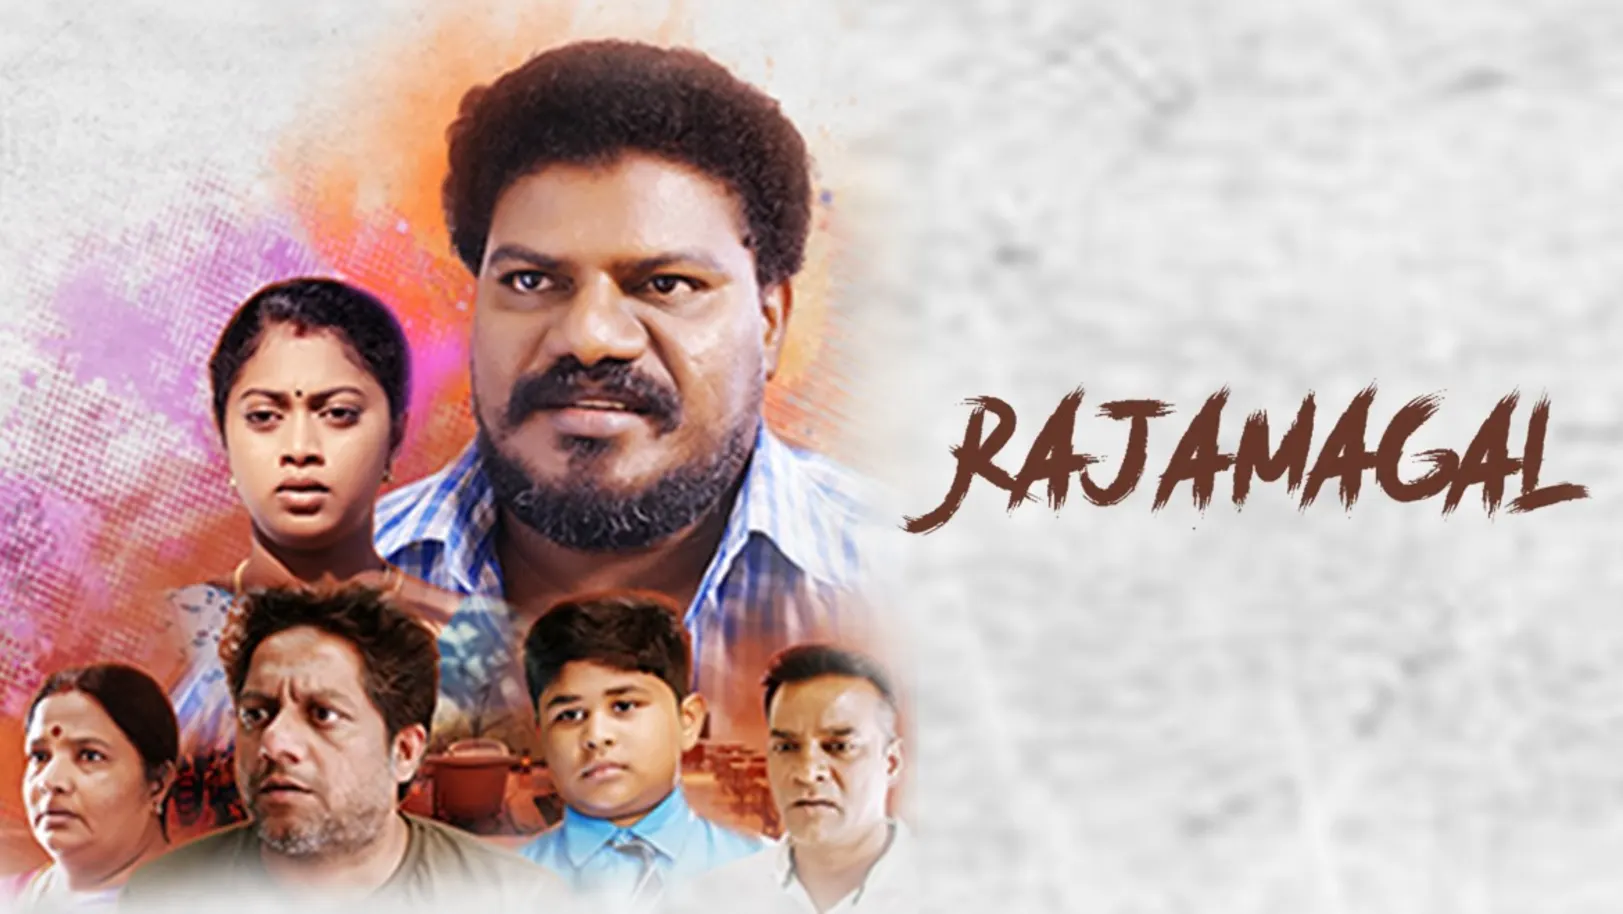 Rajamagal Movie